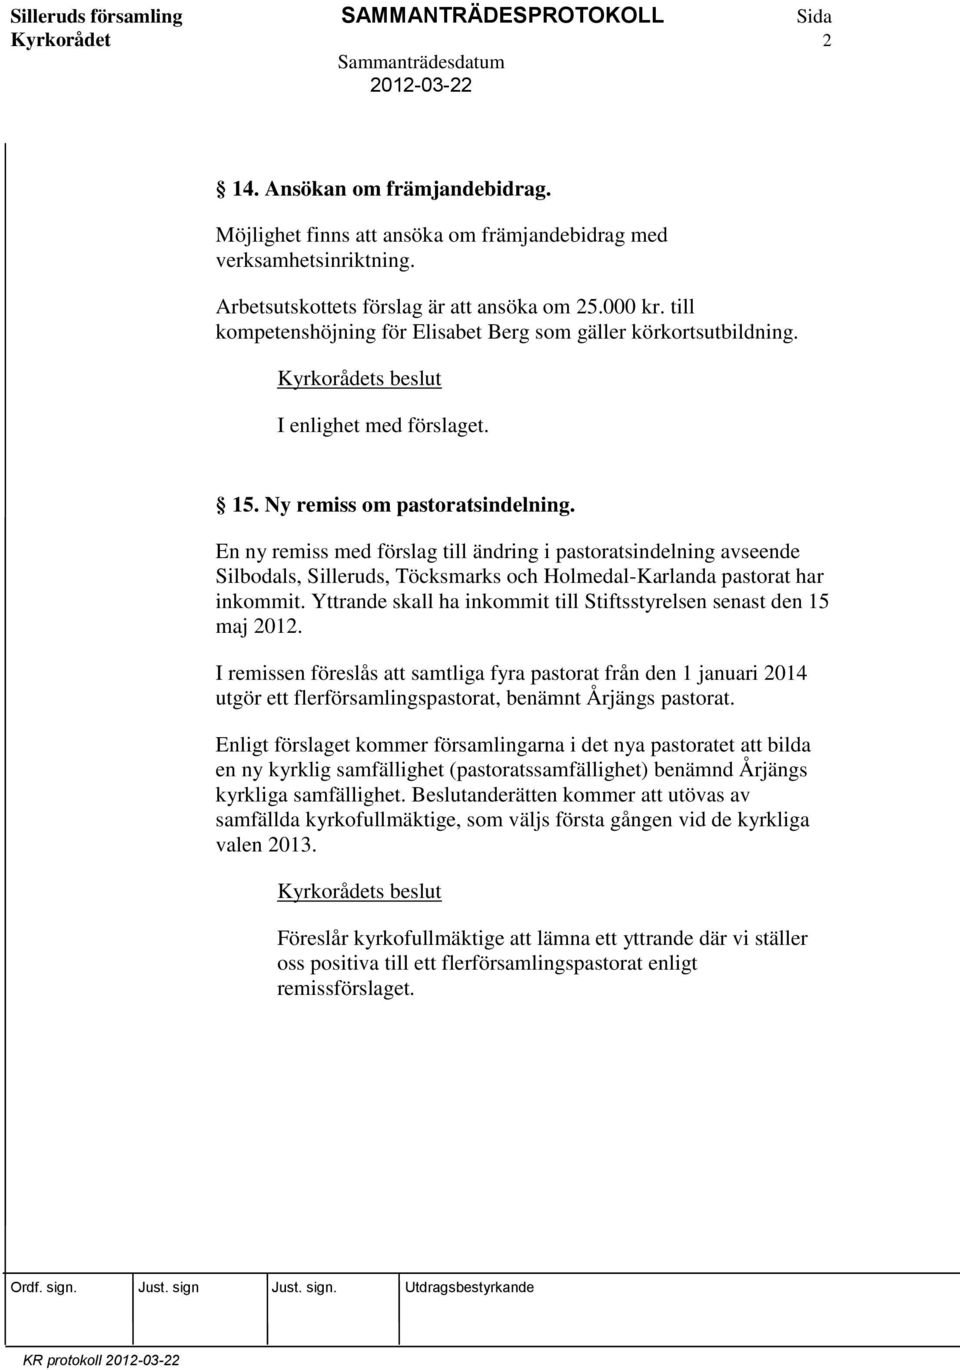 En ny remiss med förslag till ändring i pastoratsindelning avseende Silbodals, Silleruds, Töcksmarks och Holmedal-Karlanda pastorat har inkommit.